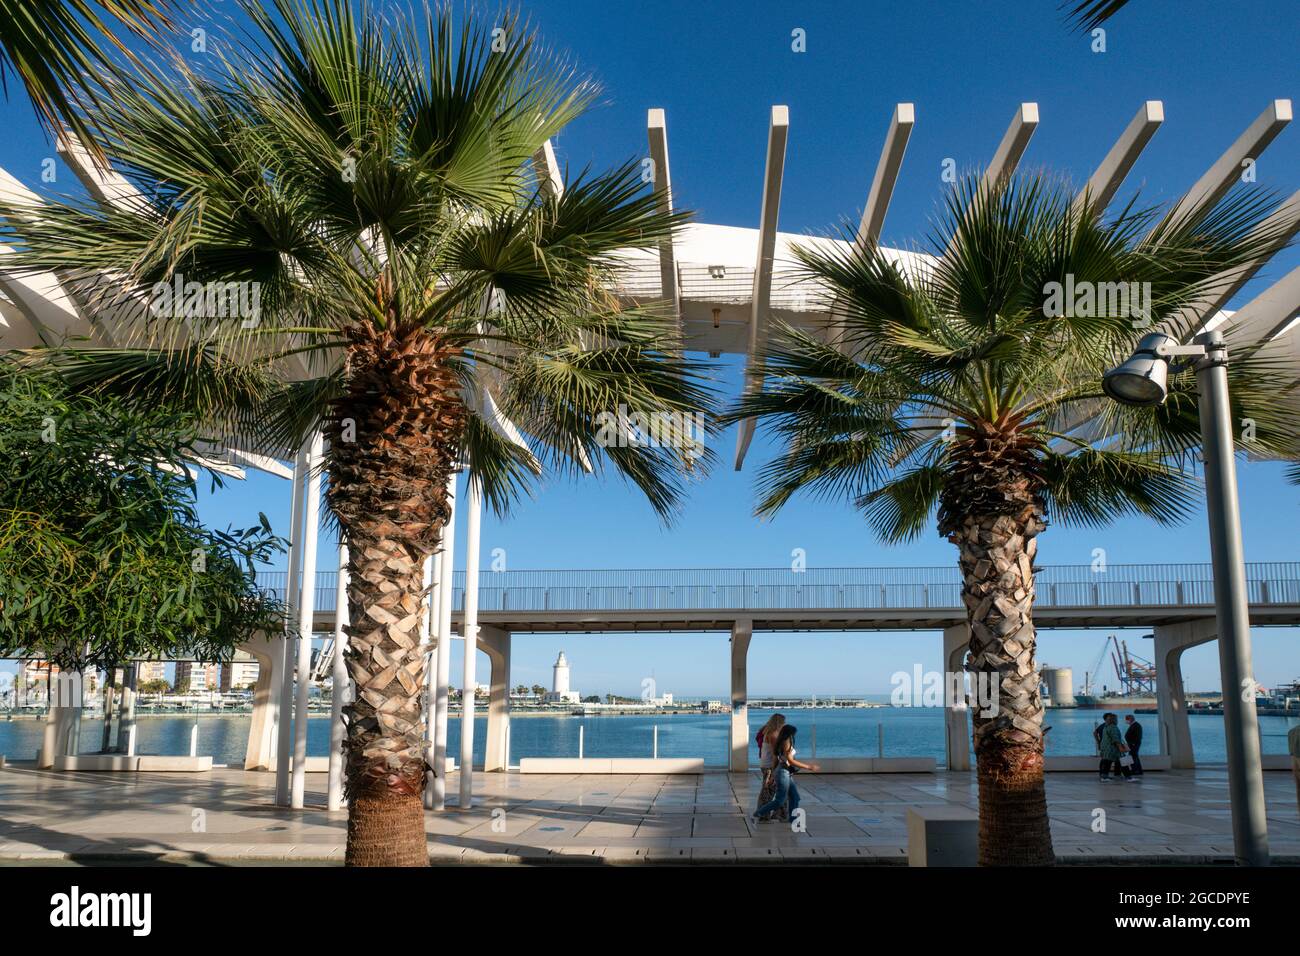 El Palmeral de las Sorpresas, Promenade, Hafen, Malaga, Costa del Sol, Provinz Malaga, Andalusien, Spanien, Europa, Stock Photo